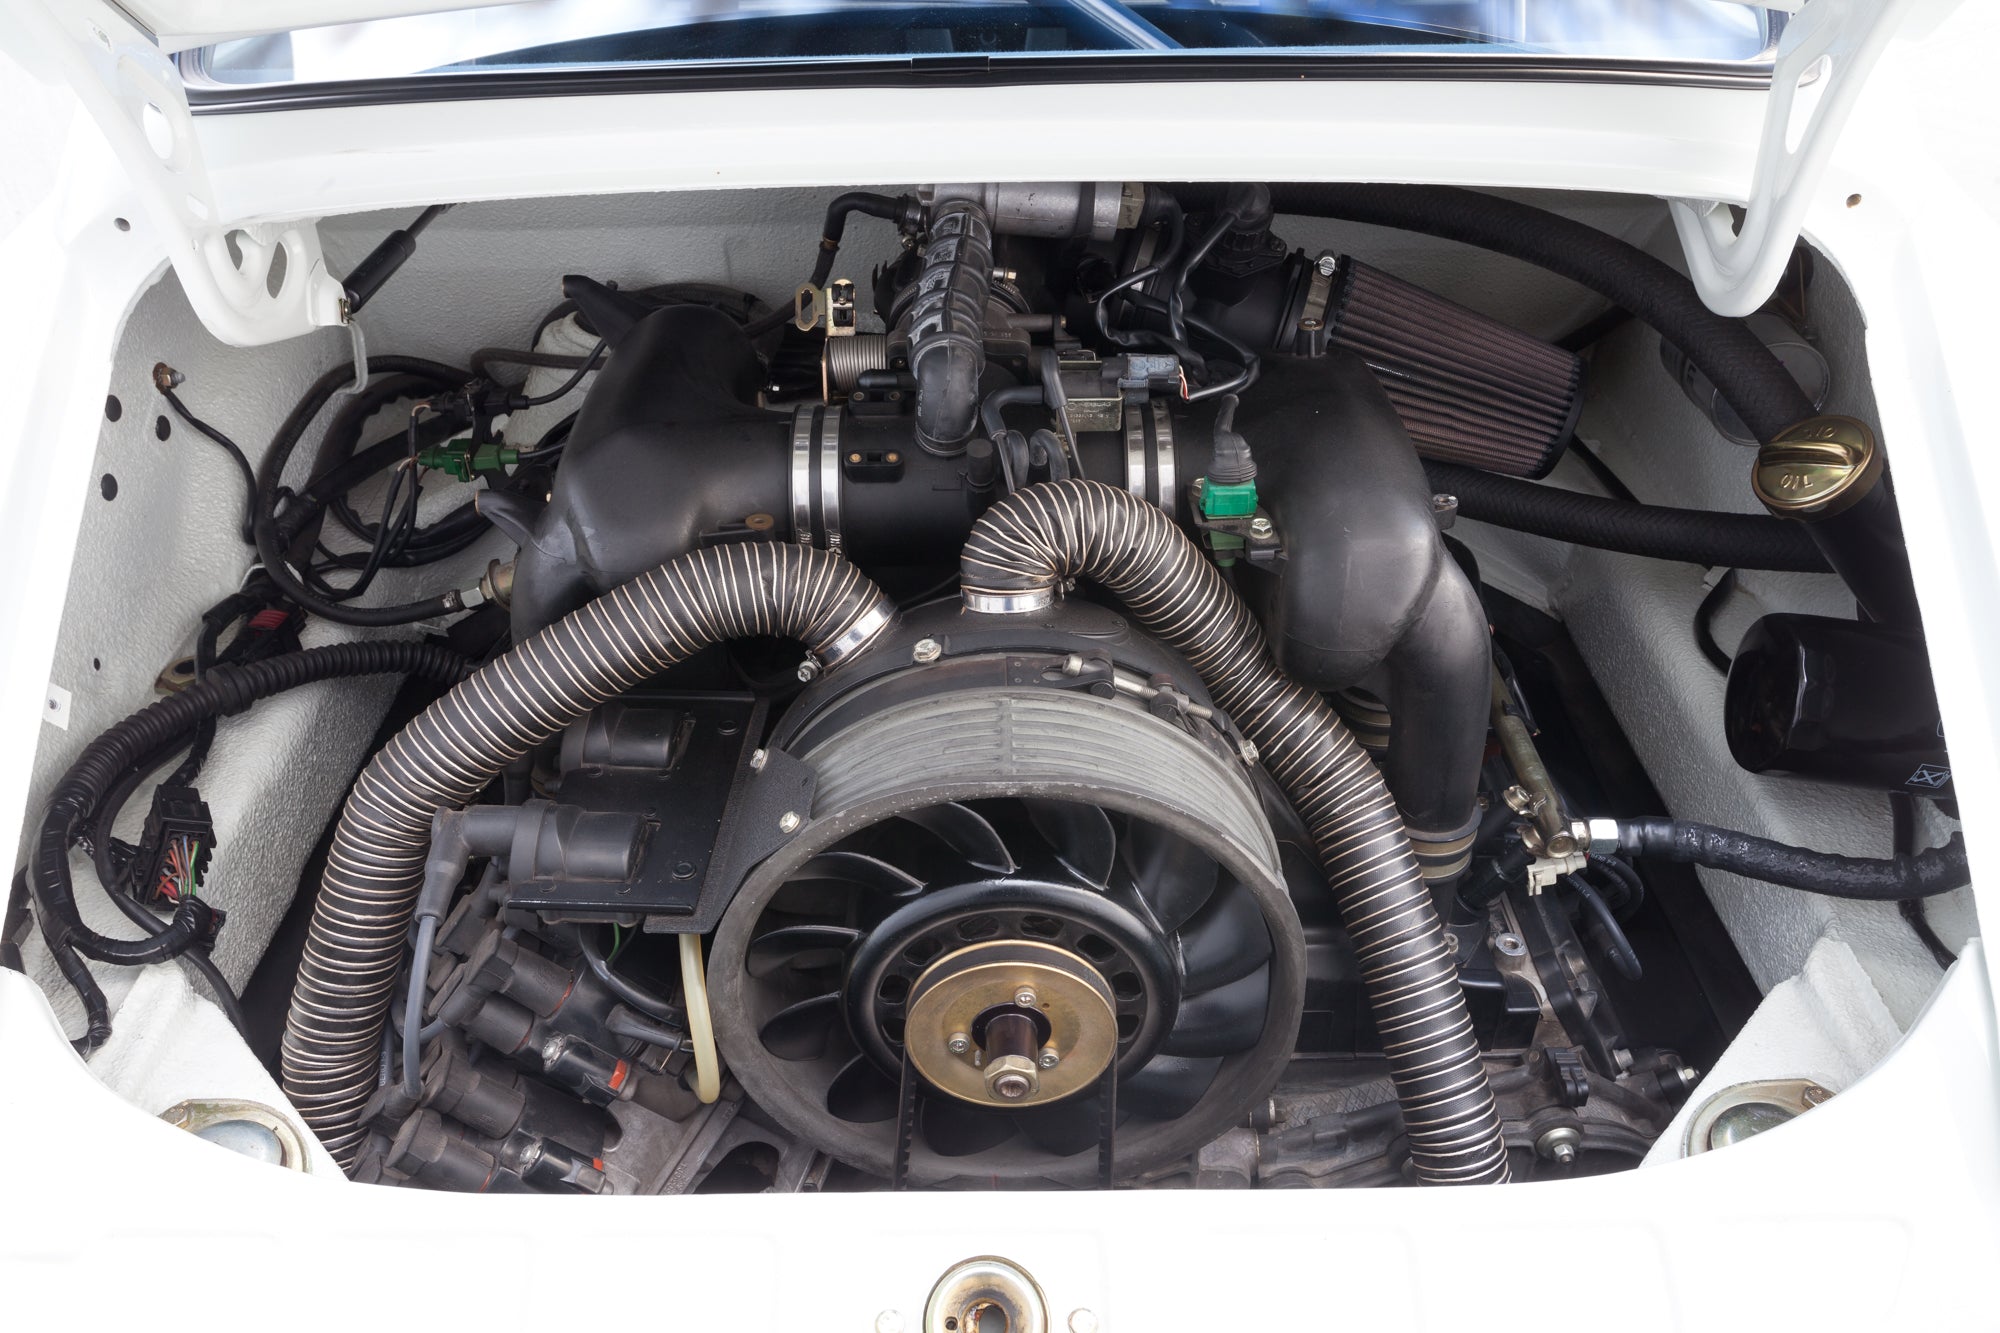 Porsche 911 ST 993 engine